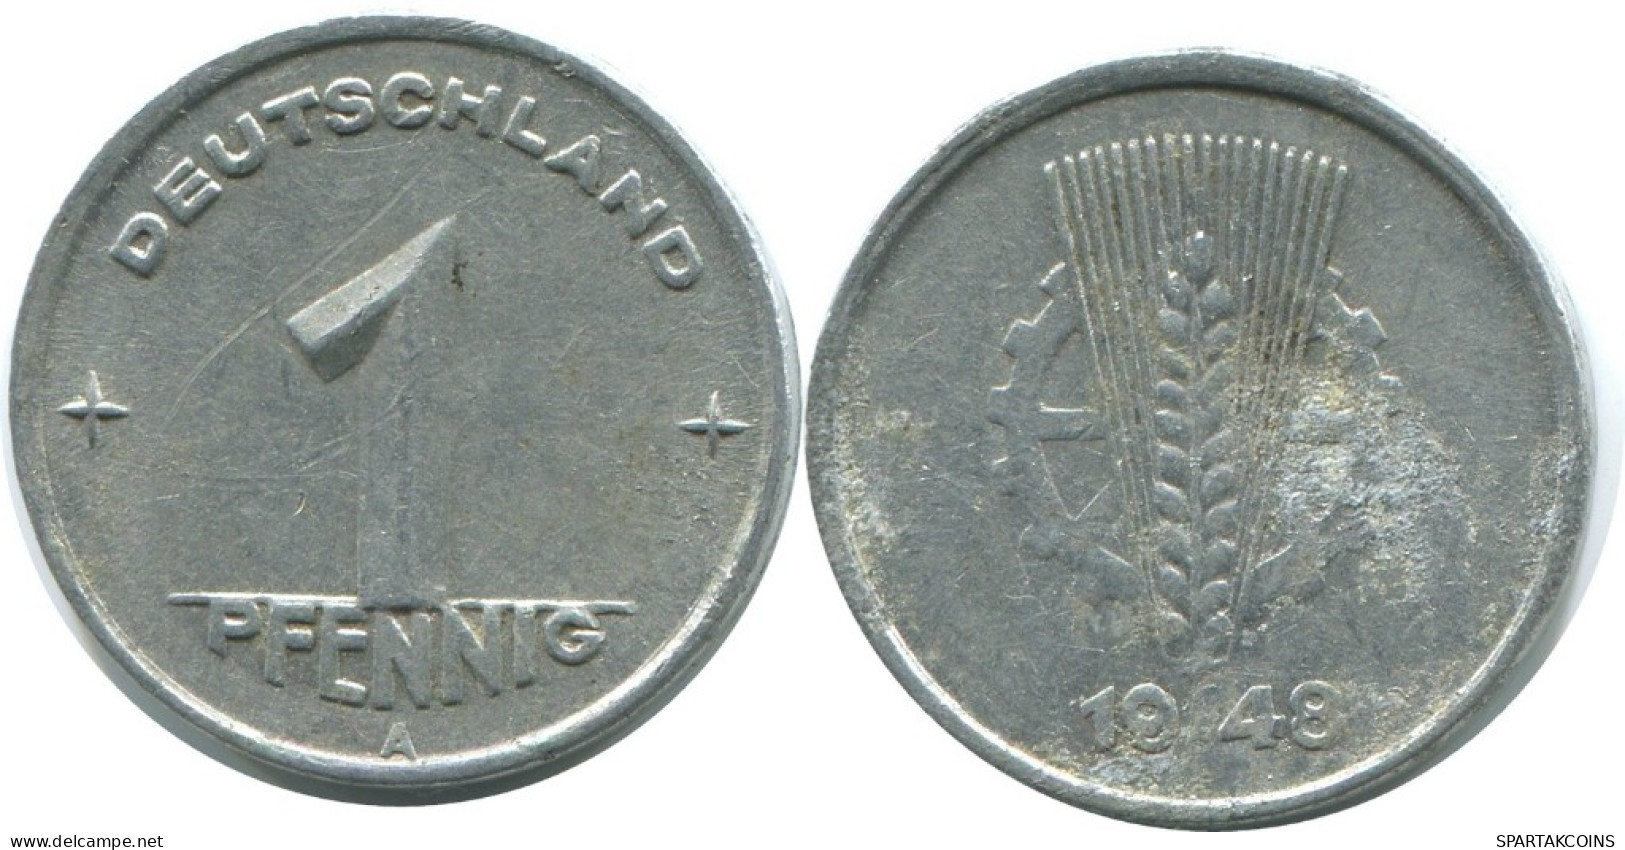 1 PFENNIG 1948 A DDR EAST GERMANY Coin #AE028.U.A - 1 Pfennig